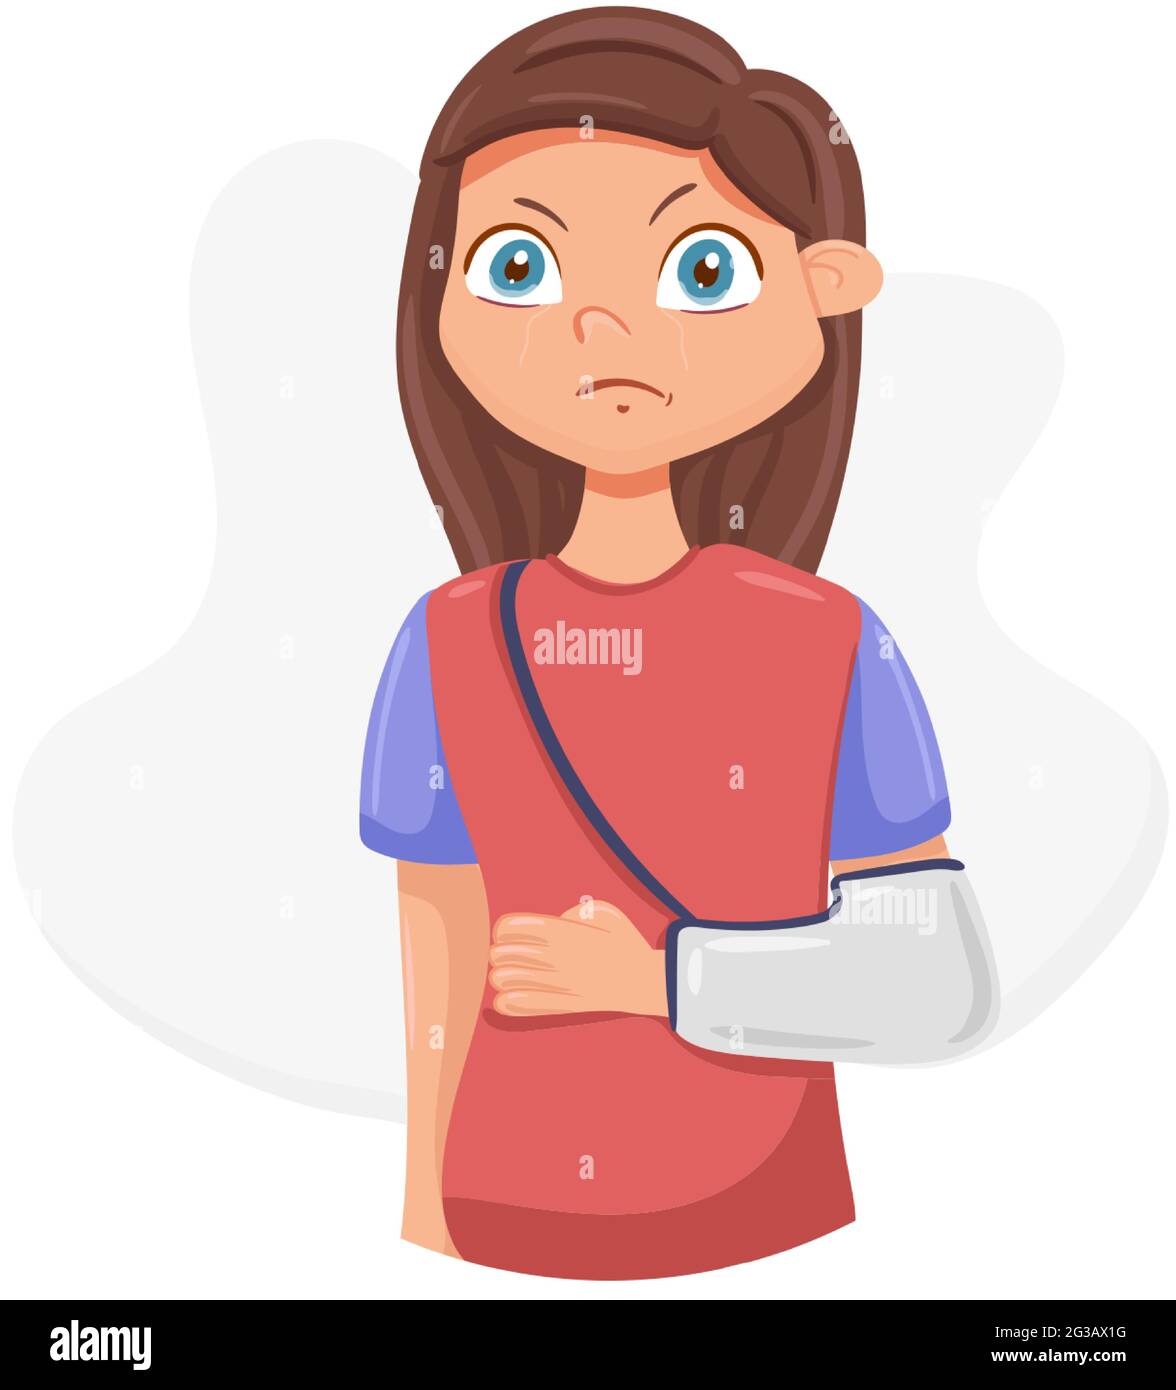 girl with broken arm cartoon